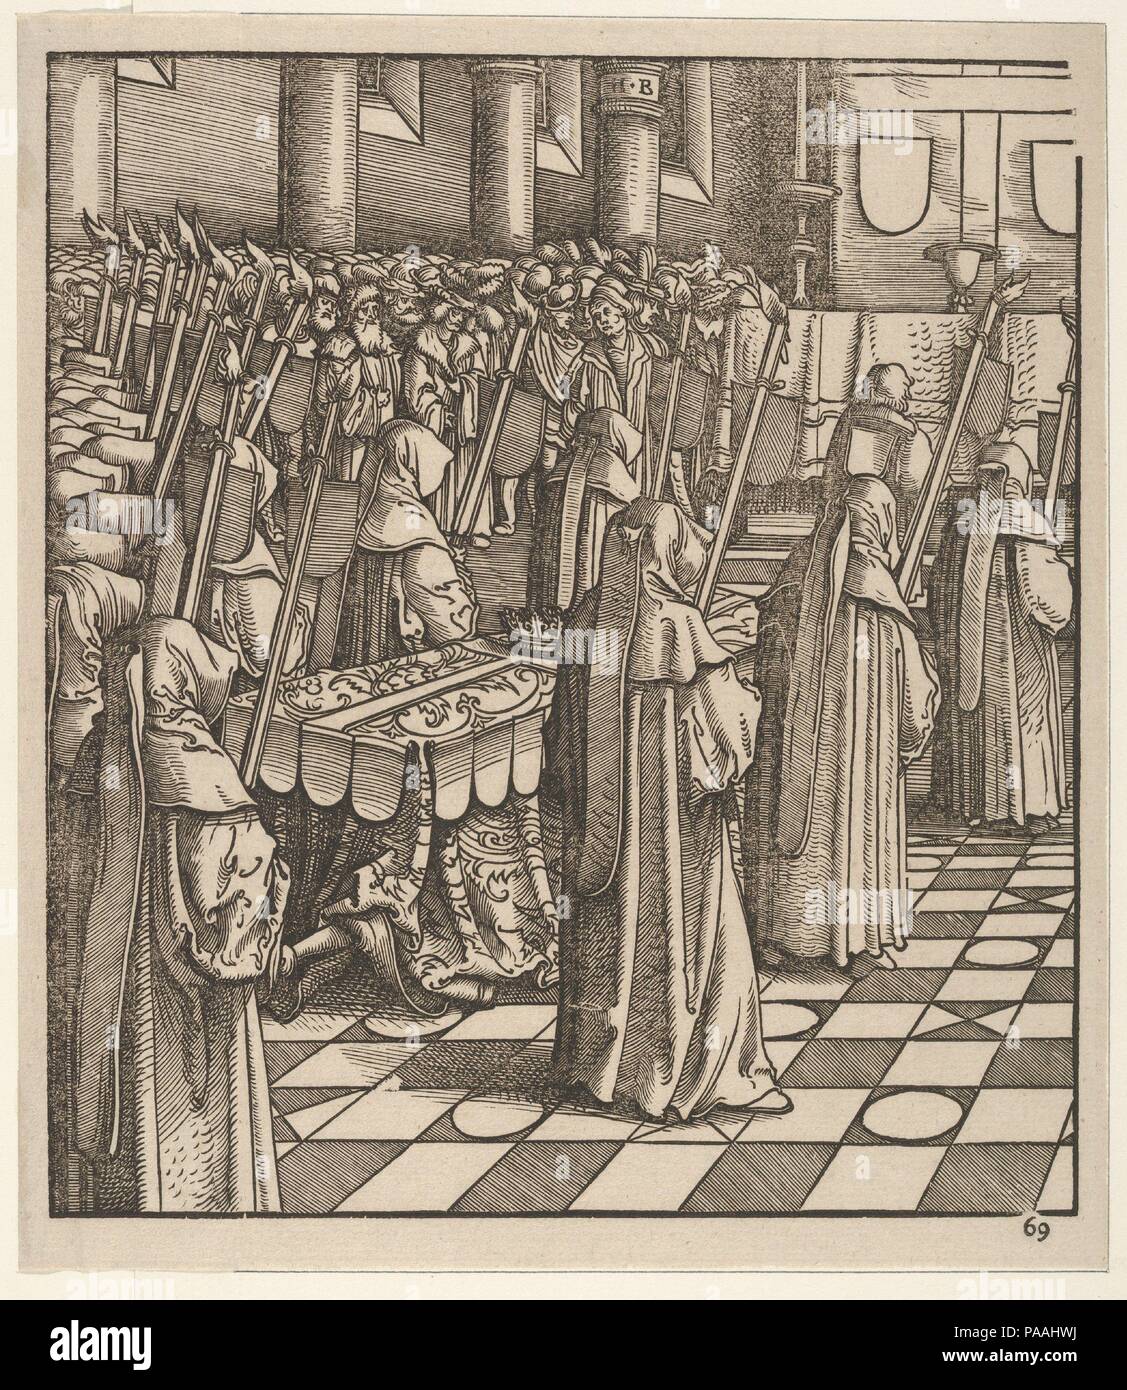 Der König von feuereisen und seine einzige Tochter, von Der Weisskunig. Künstler: Hans Burgkmair (Deutsch, Augsburg 1473-1531 Augsburg). Thema: von Marx Treitz-Sauerwein von Ehrentreitz geschrieben (gestorben 1527). Maße: Blatt: 8 7/8 x 8 1/8 in. (22,6 × 20,7 cm). Engraver: Jost de Negker (1480-1546). Serie/Portfolio: "Weisskunig. Datum: 18. Jahrhundert gedruckt. Der Weisskunig (Der weiße König) ist ein Lose biografische Annäherung an das Leben von Kaiser Maximilian I. den Text, komponiert von Maximilian's Sekretärin Marx Treitz-Sauerwein, wird durch Illustrationen von Burgkmair, sowie Leonhard Beck, Ha begleitet Stockfoto